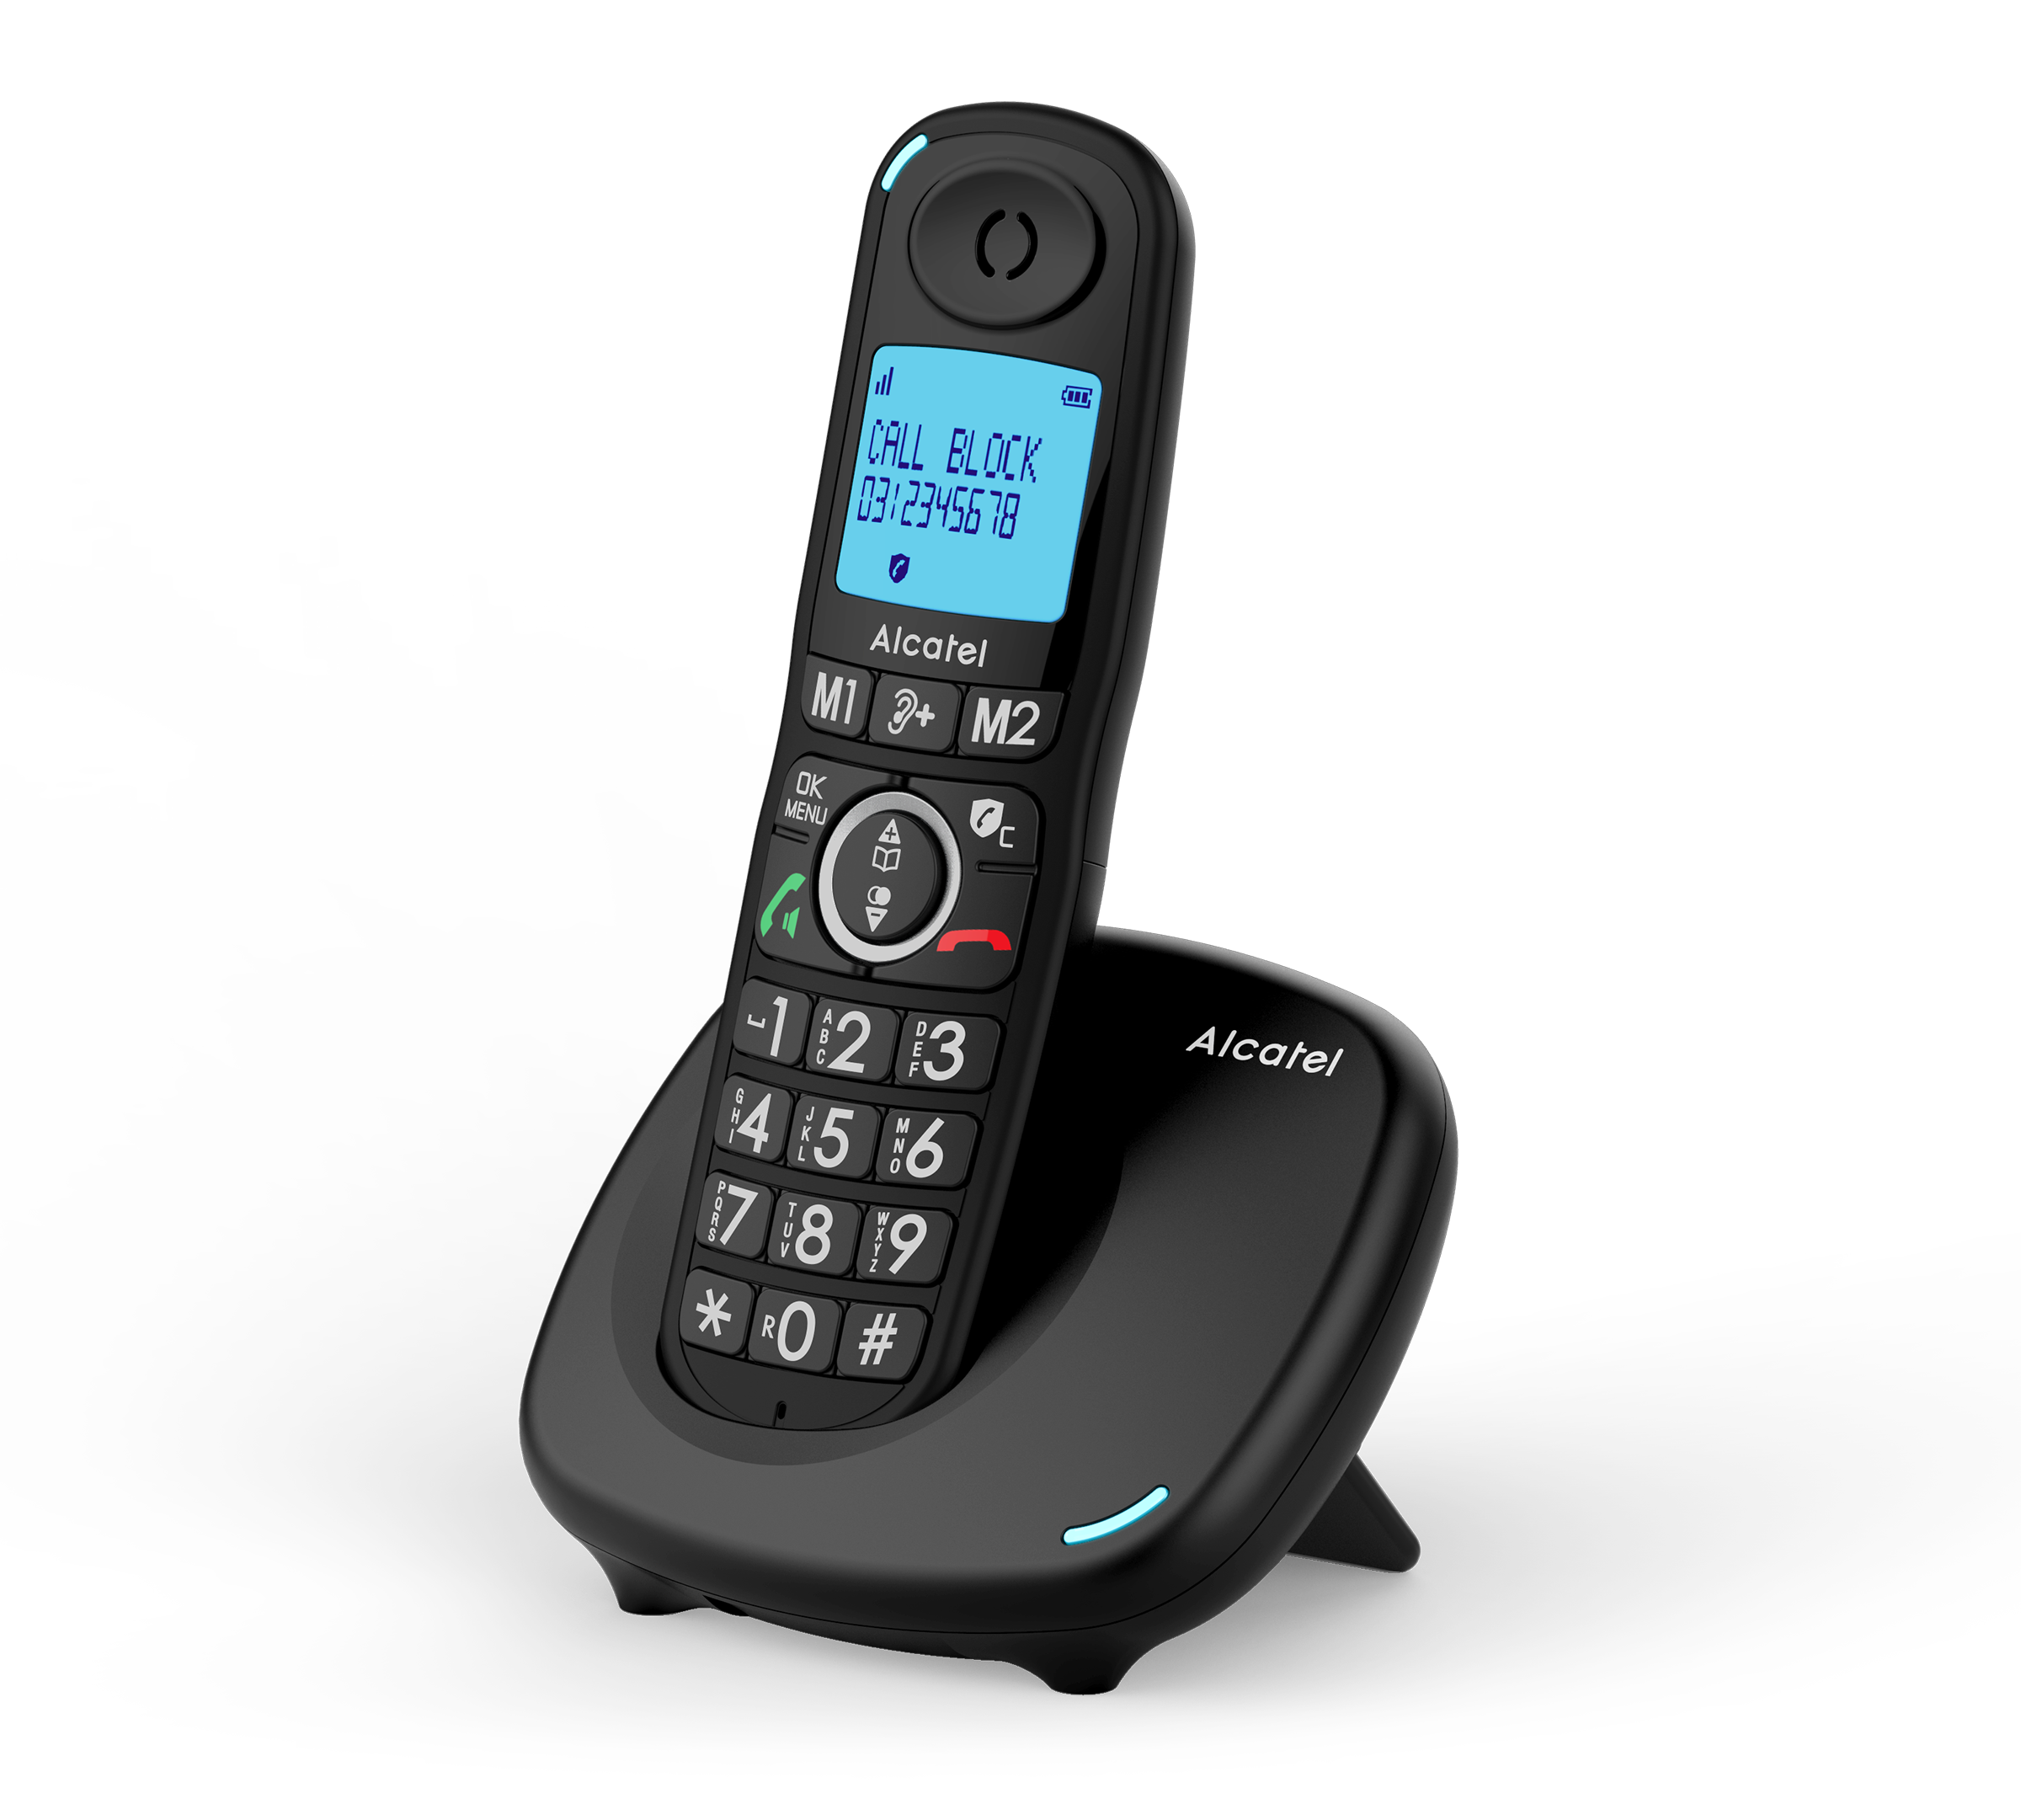 Alcatel  Teléfono Inalámbrico con manos libres D295LABLK - Negro